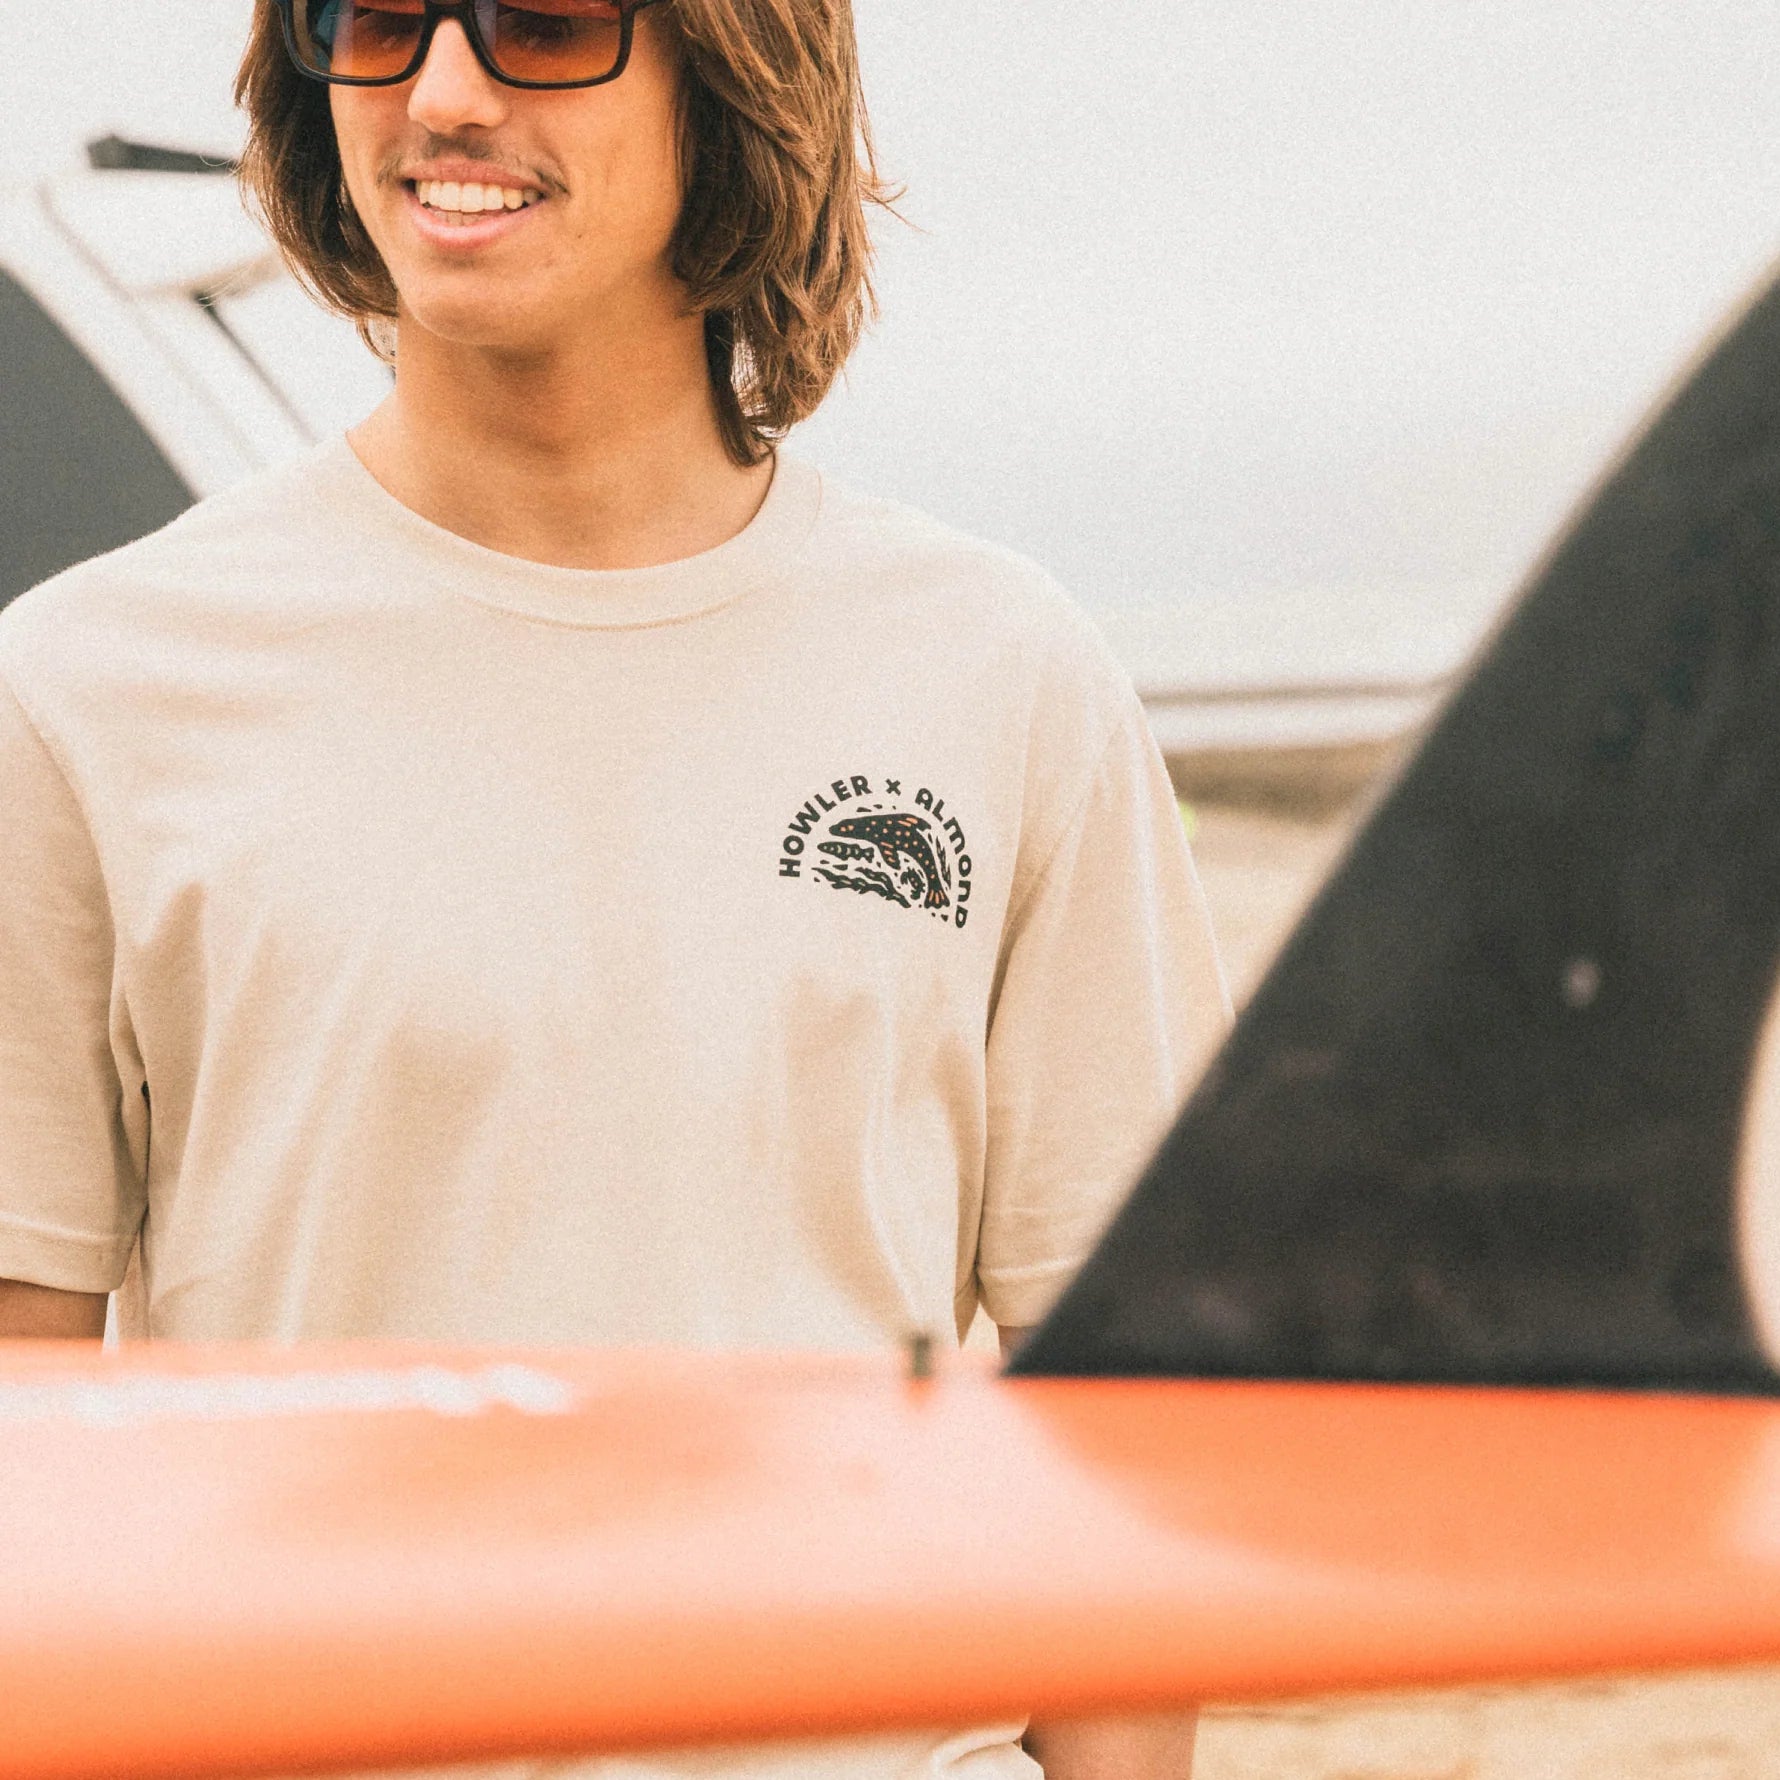 Howler x Almond Surfboards T-Shirt